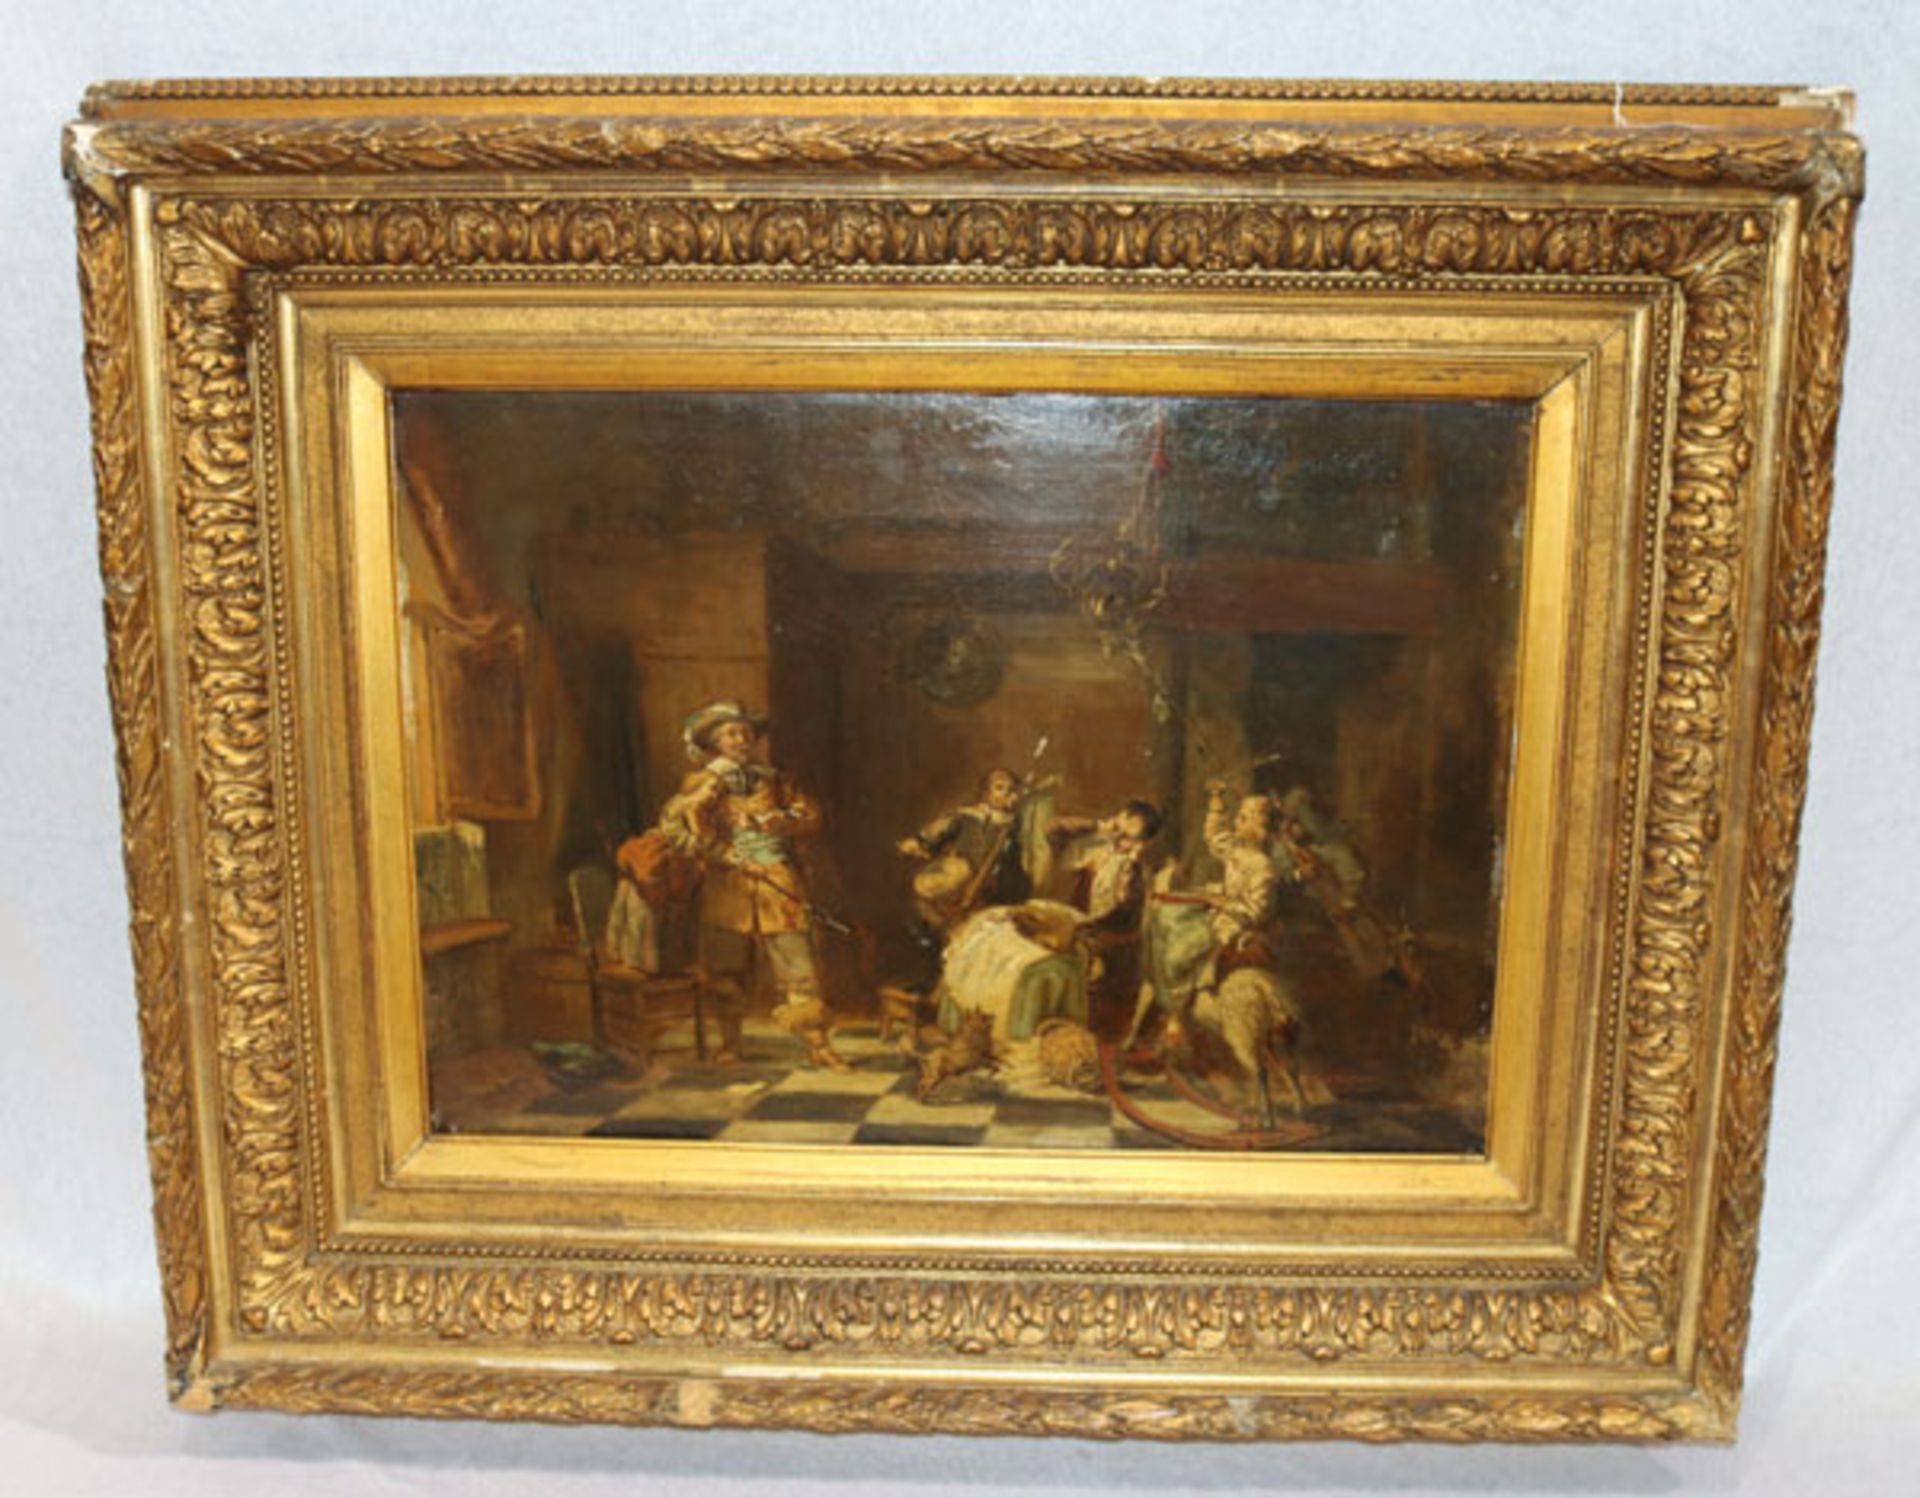 Gemälde ÖL/Holz 'Musikstunde', signiert David Bles, * 1821 + 1899, gerahmt, Rahmen beschädigt, incl.